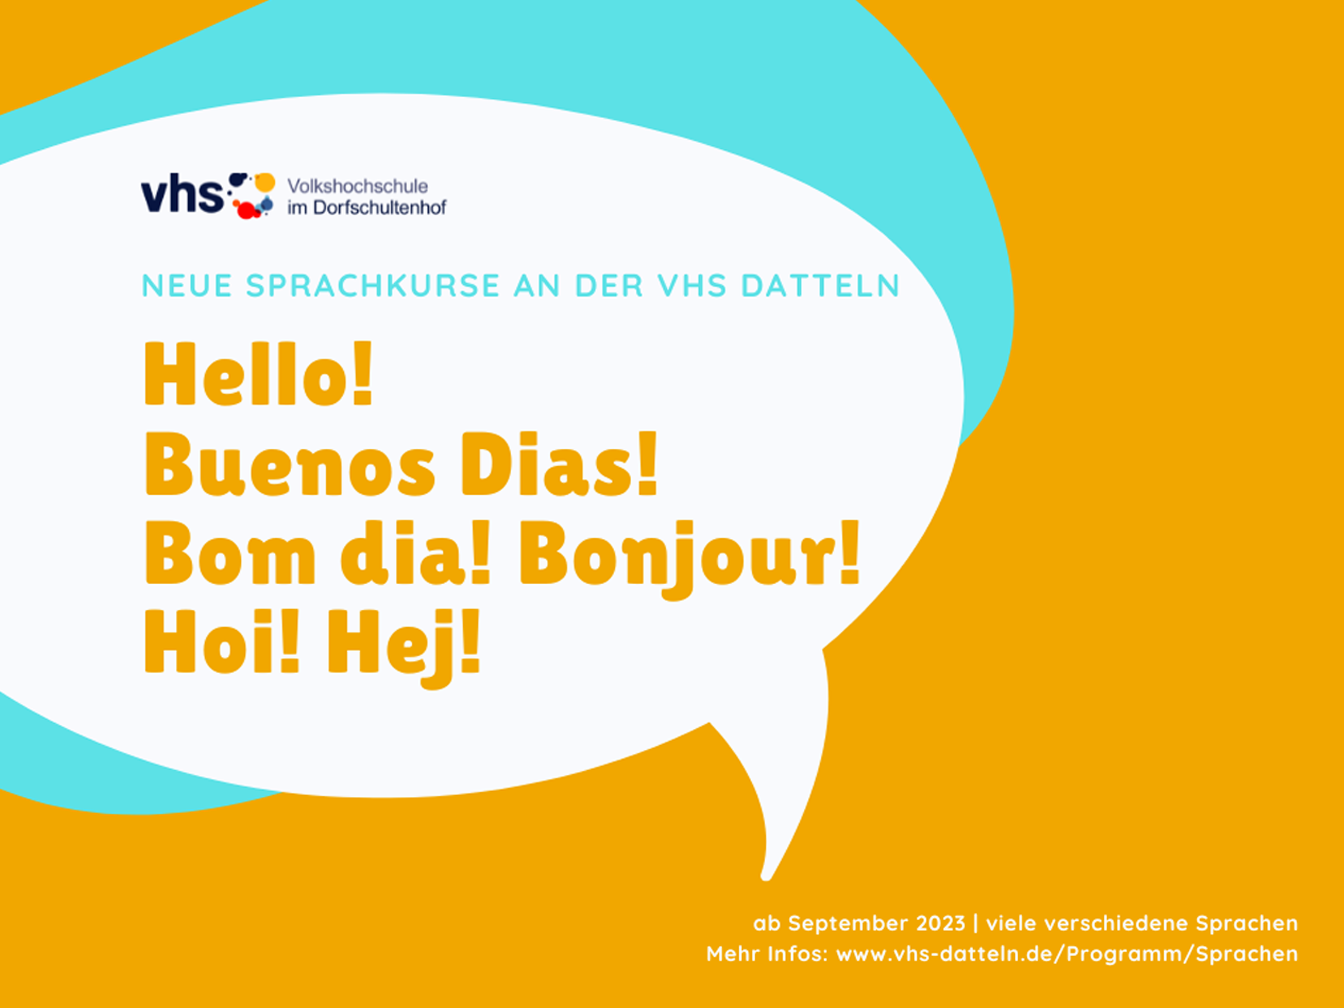 In einer Sprechblase steht der Text "Neue Sprachkurse an der VHS Datteln: Hello! Buenos Dias! Bom dia! Bonjour! Hoi! Hej!", außerdem dass die Kurse ab September beginnen und es viele verschiedene Sprachen gibt. Zusätzlich gibt es einen Verweis auf die Internetseite der VHS.